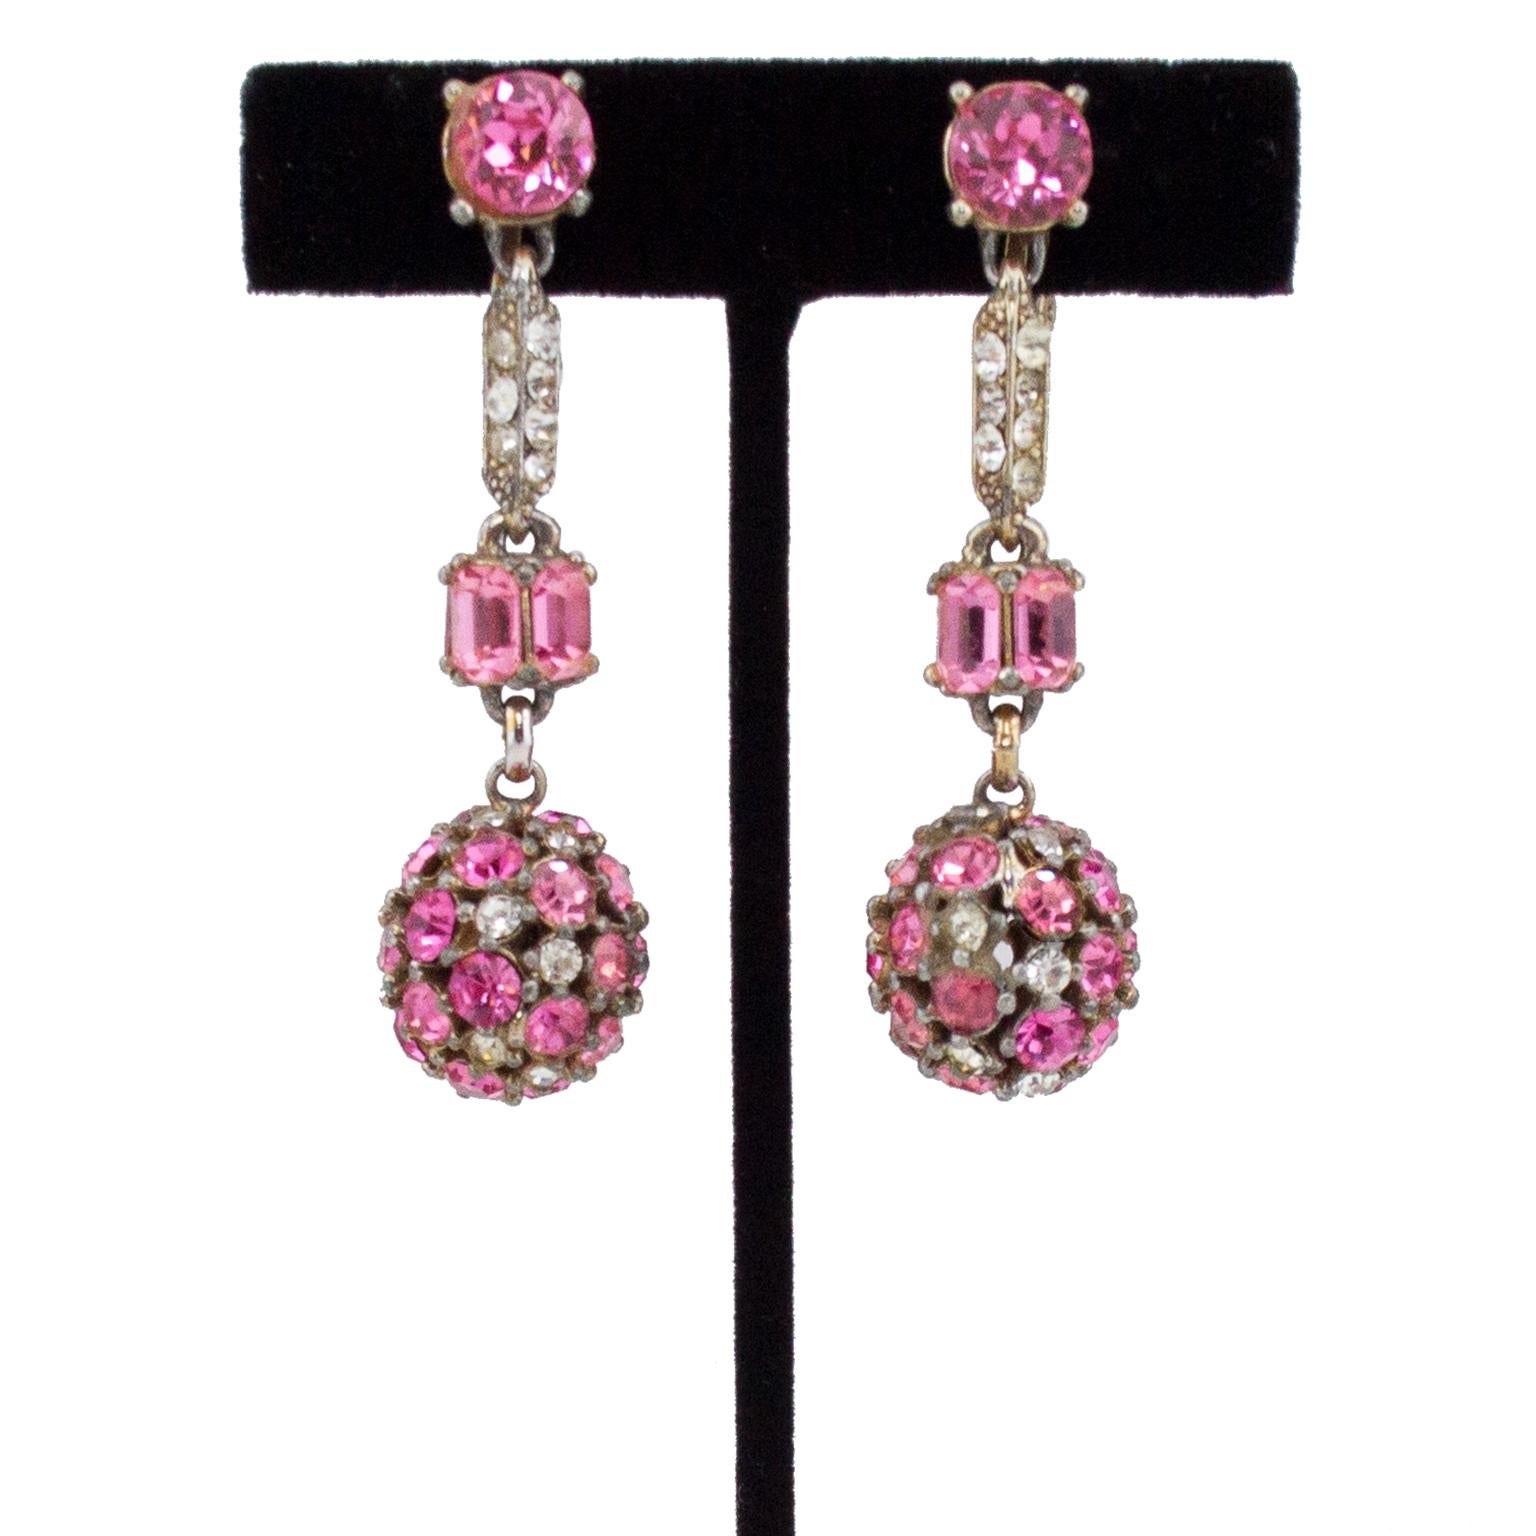 Sehr lustige 1960er Jahre Bogoff Lariat Halskette und baumelnden Tropfen Ohrring gesetzt. Beide Stücke sind mit einer Mischung aus rosa und klaren Strasssteinen besetzt, die in einer großen, mit Strasssteinen besetzten Kugel enden. Sehr elegant. Die